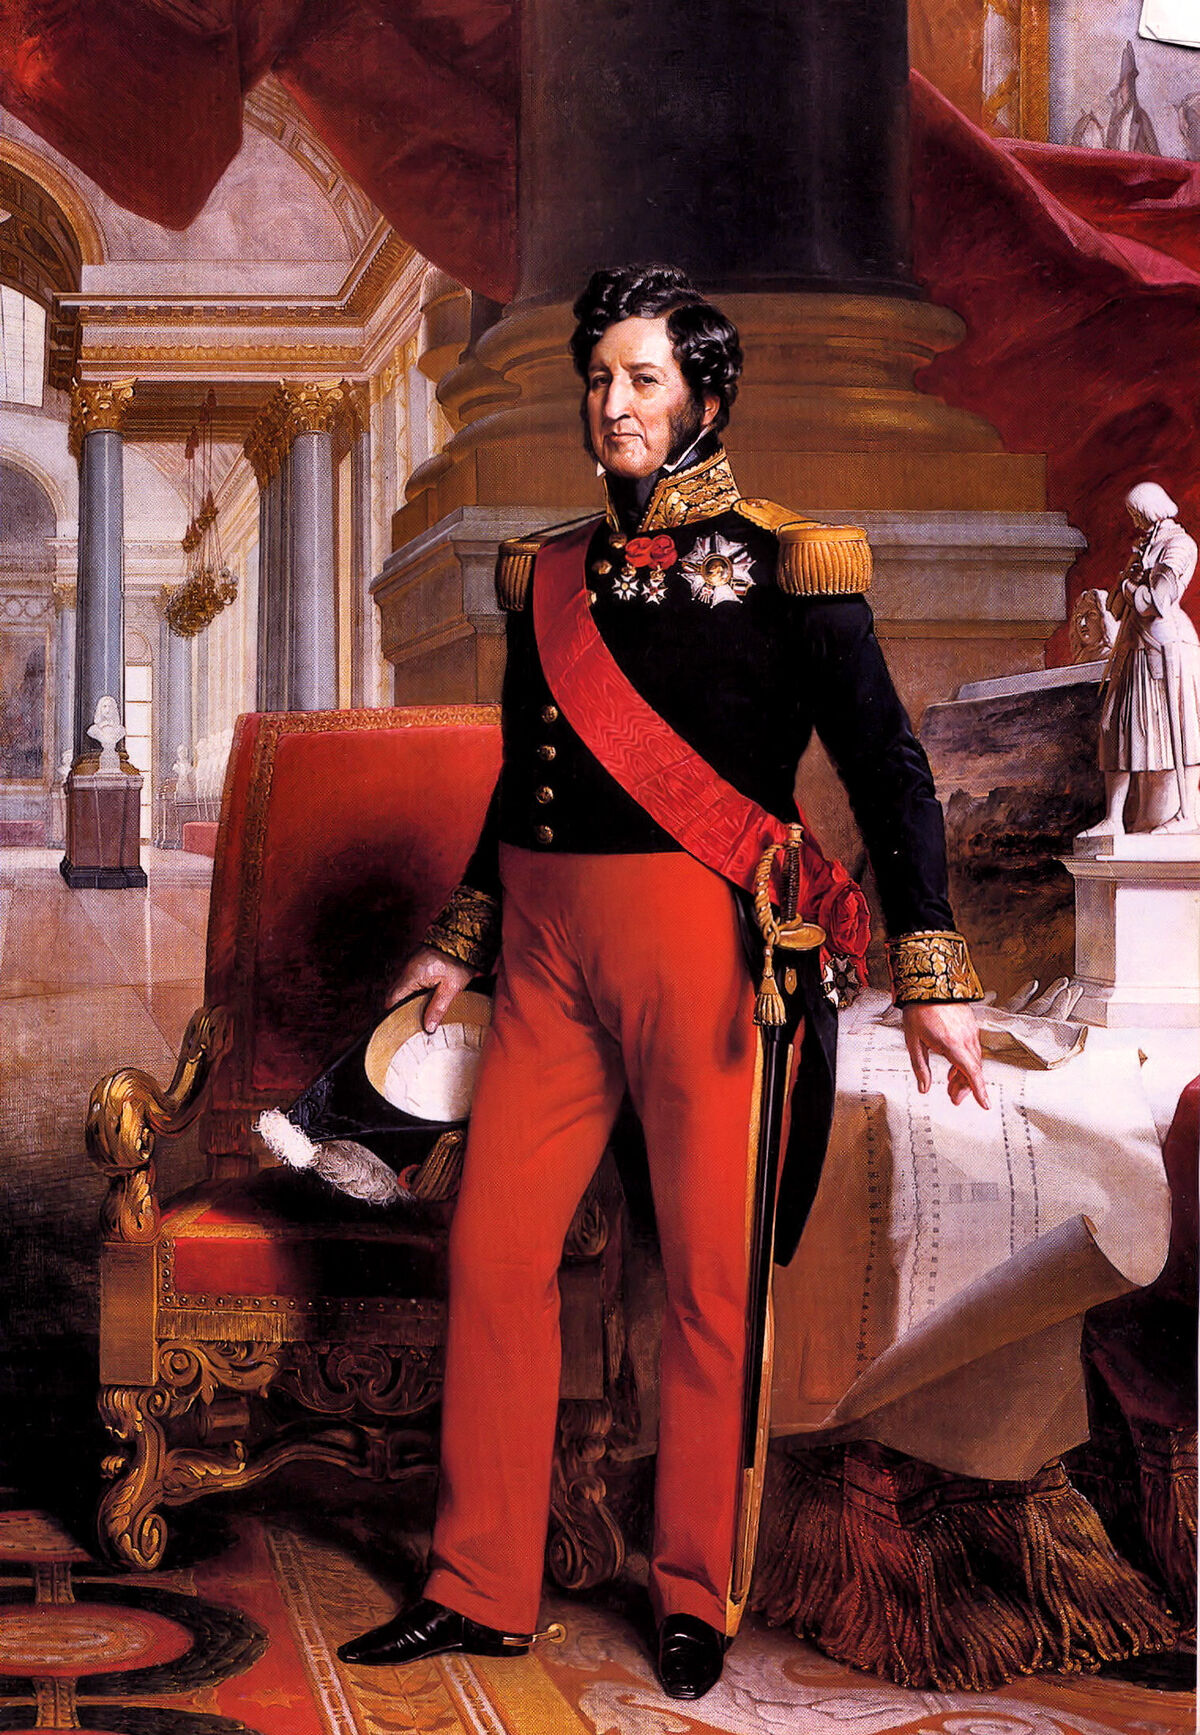 Louis Philippe I (Le mouvement réformiste), Alternative History